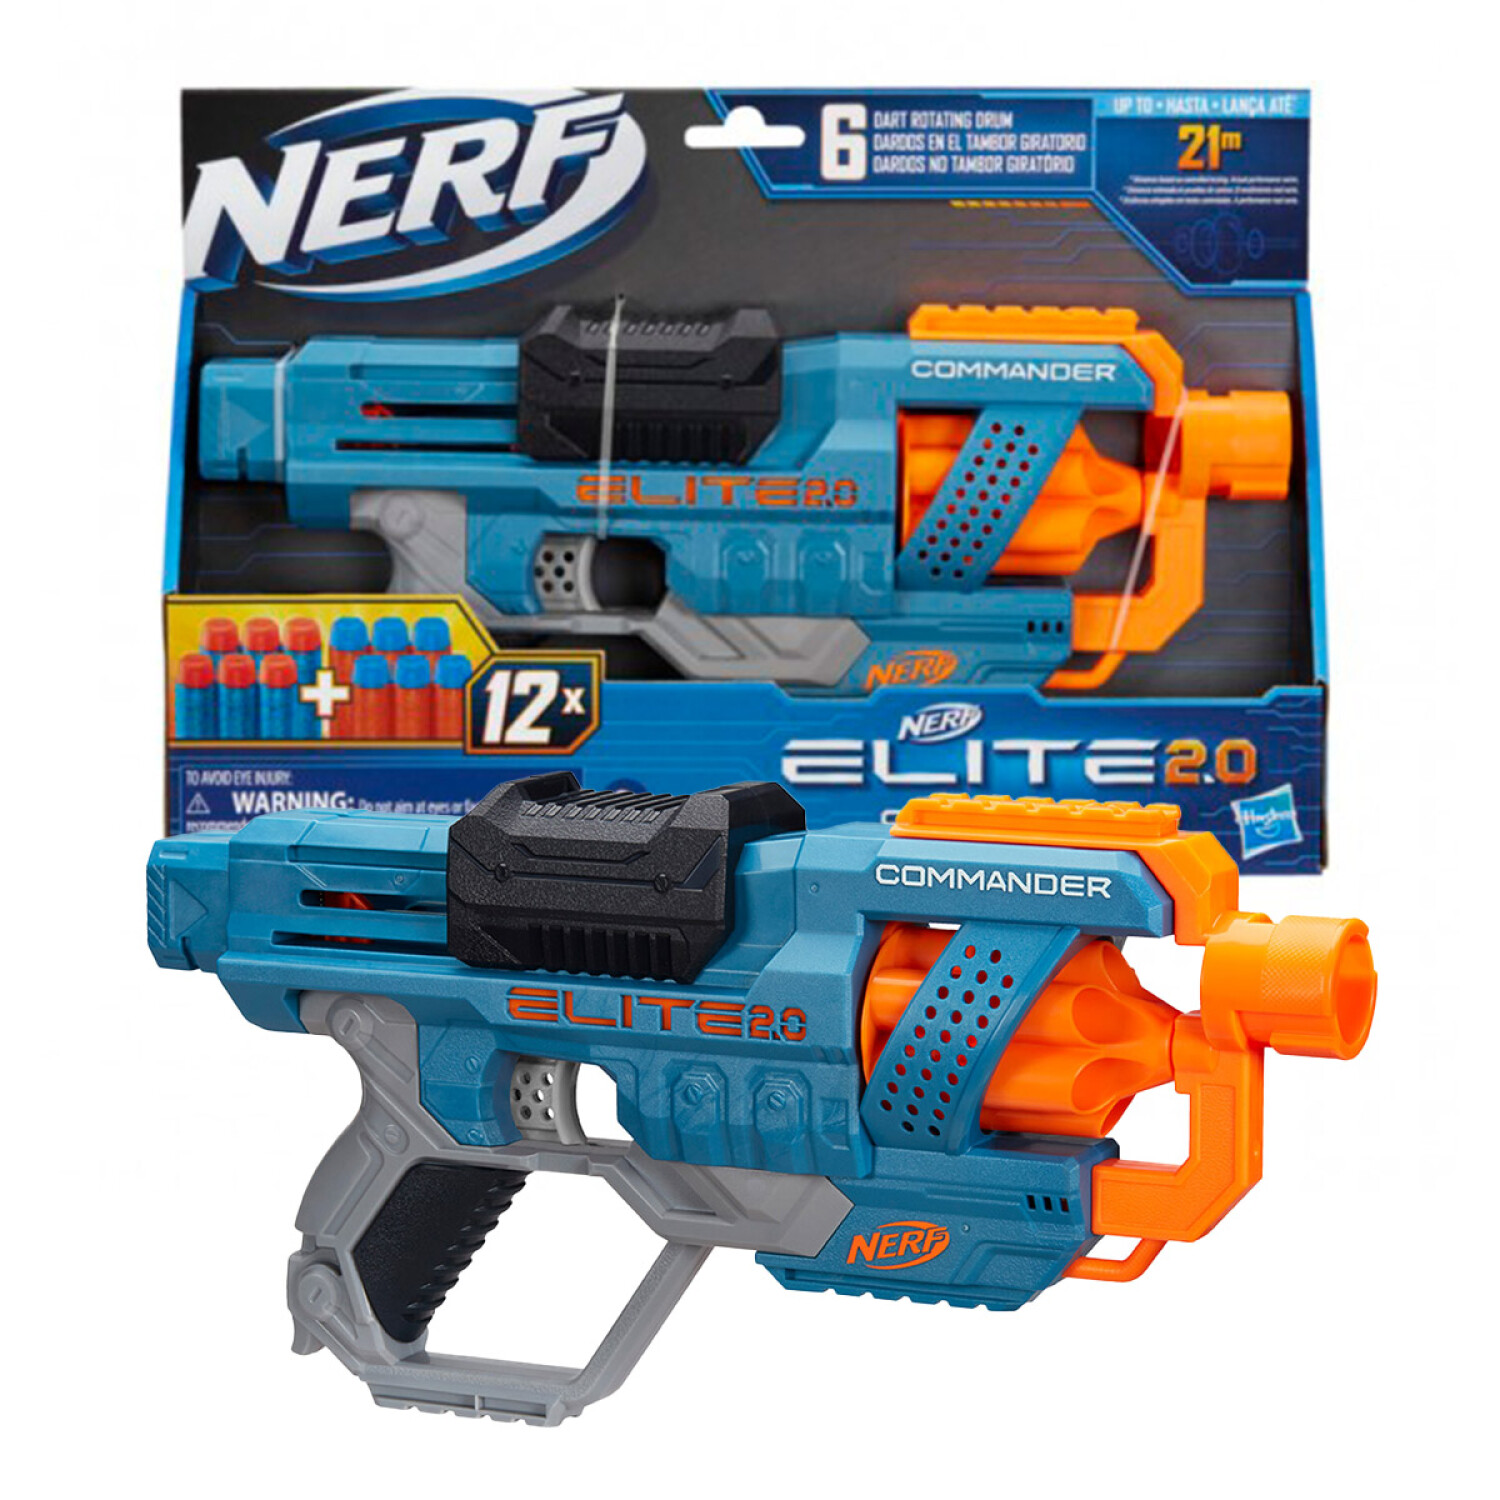  Pistola de juguete para dardos Nerf, lanzadores